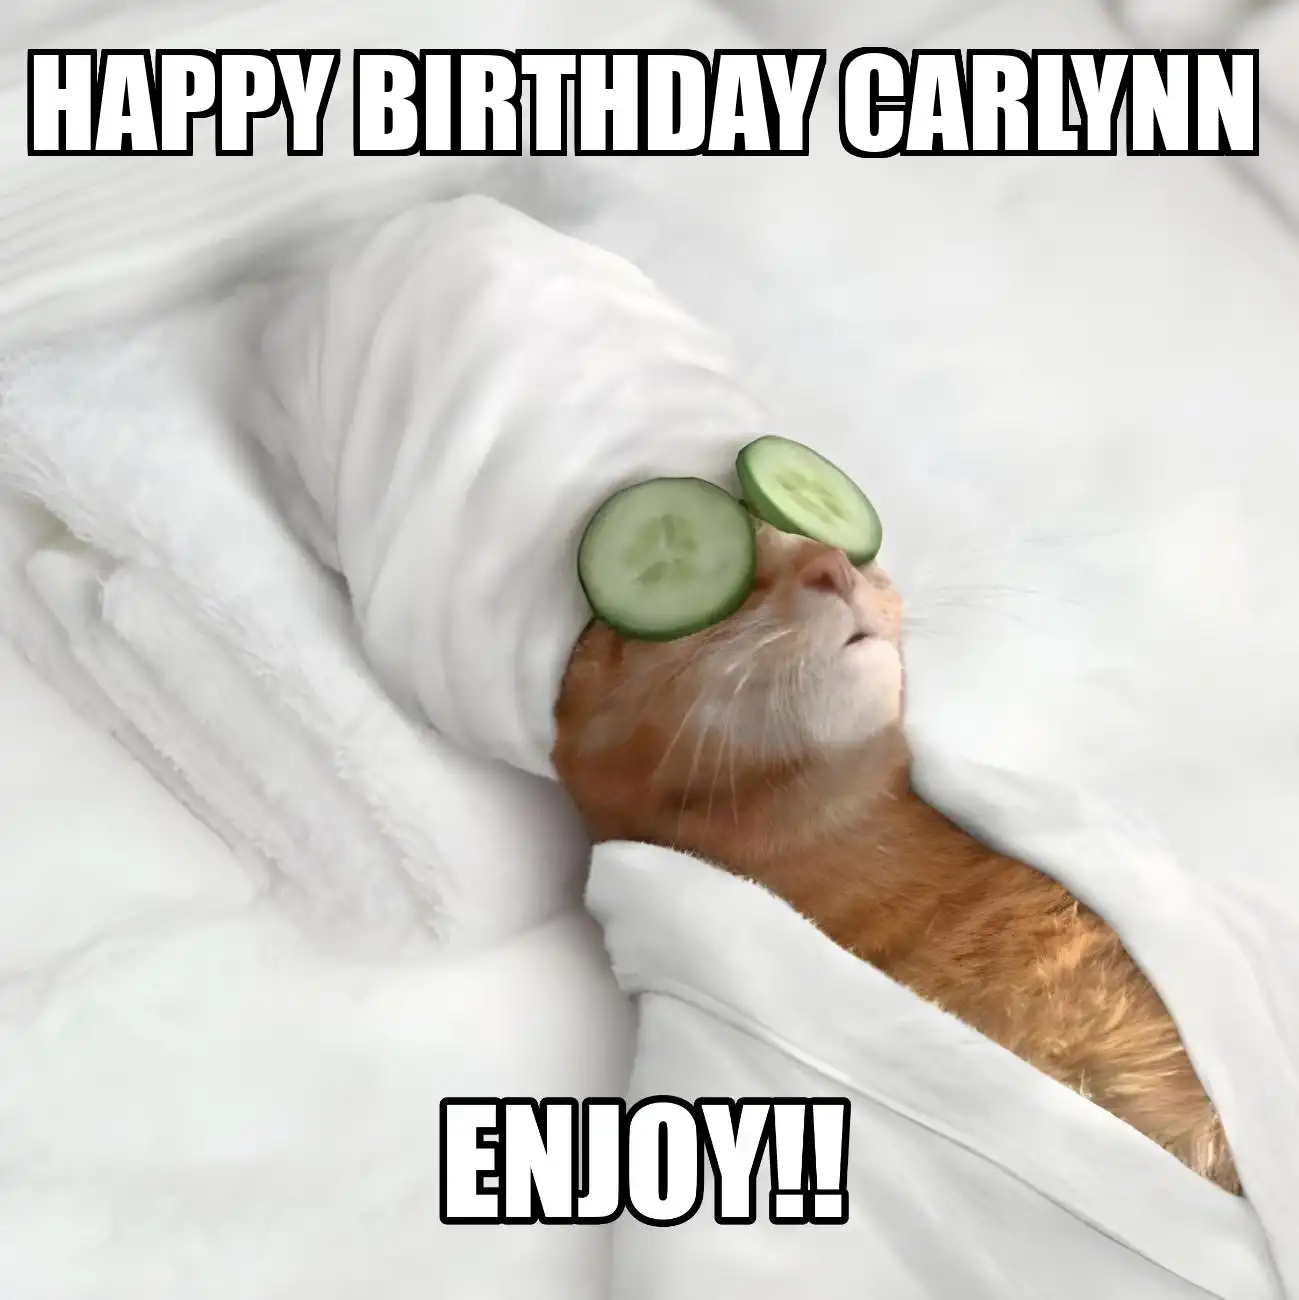 Happy Birthday Carlynn Enjoy Cat Meme